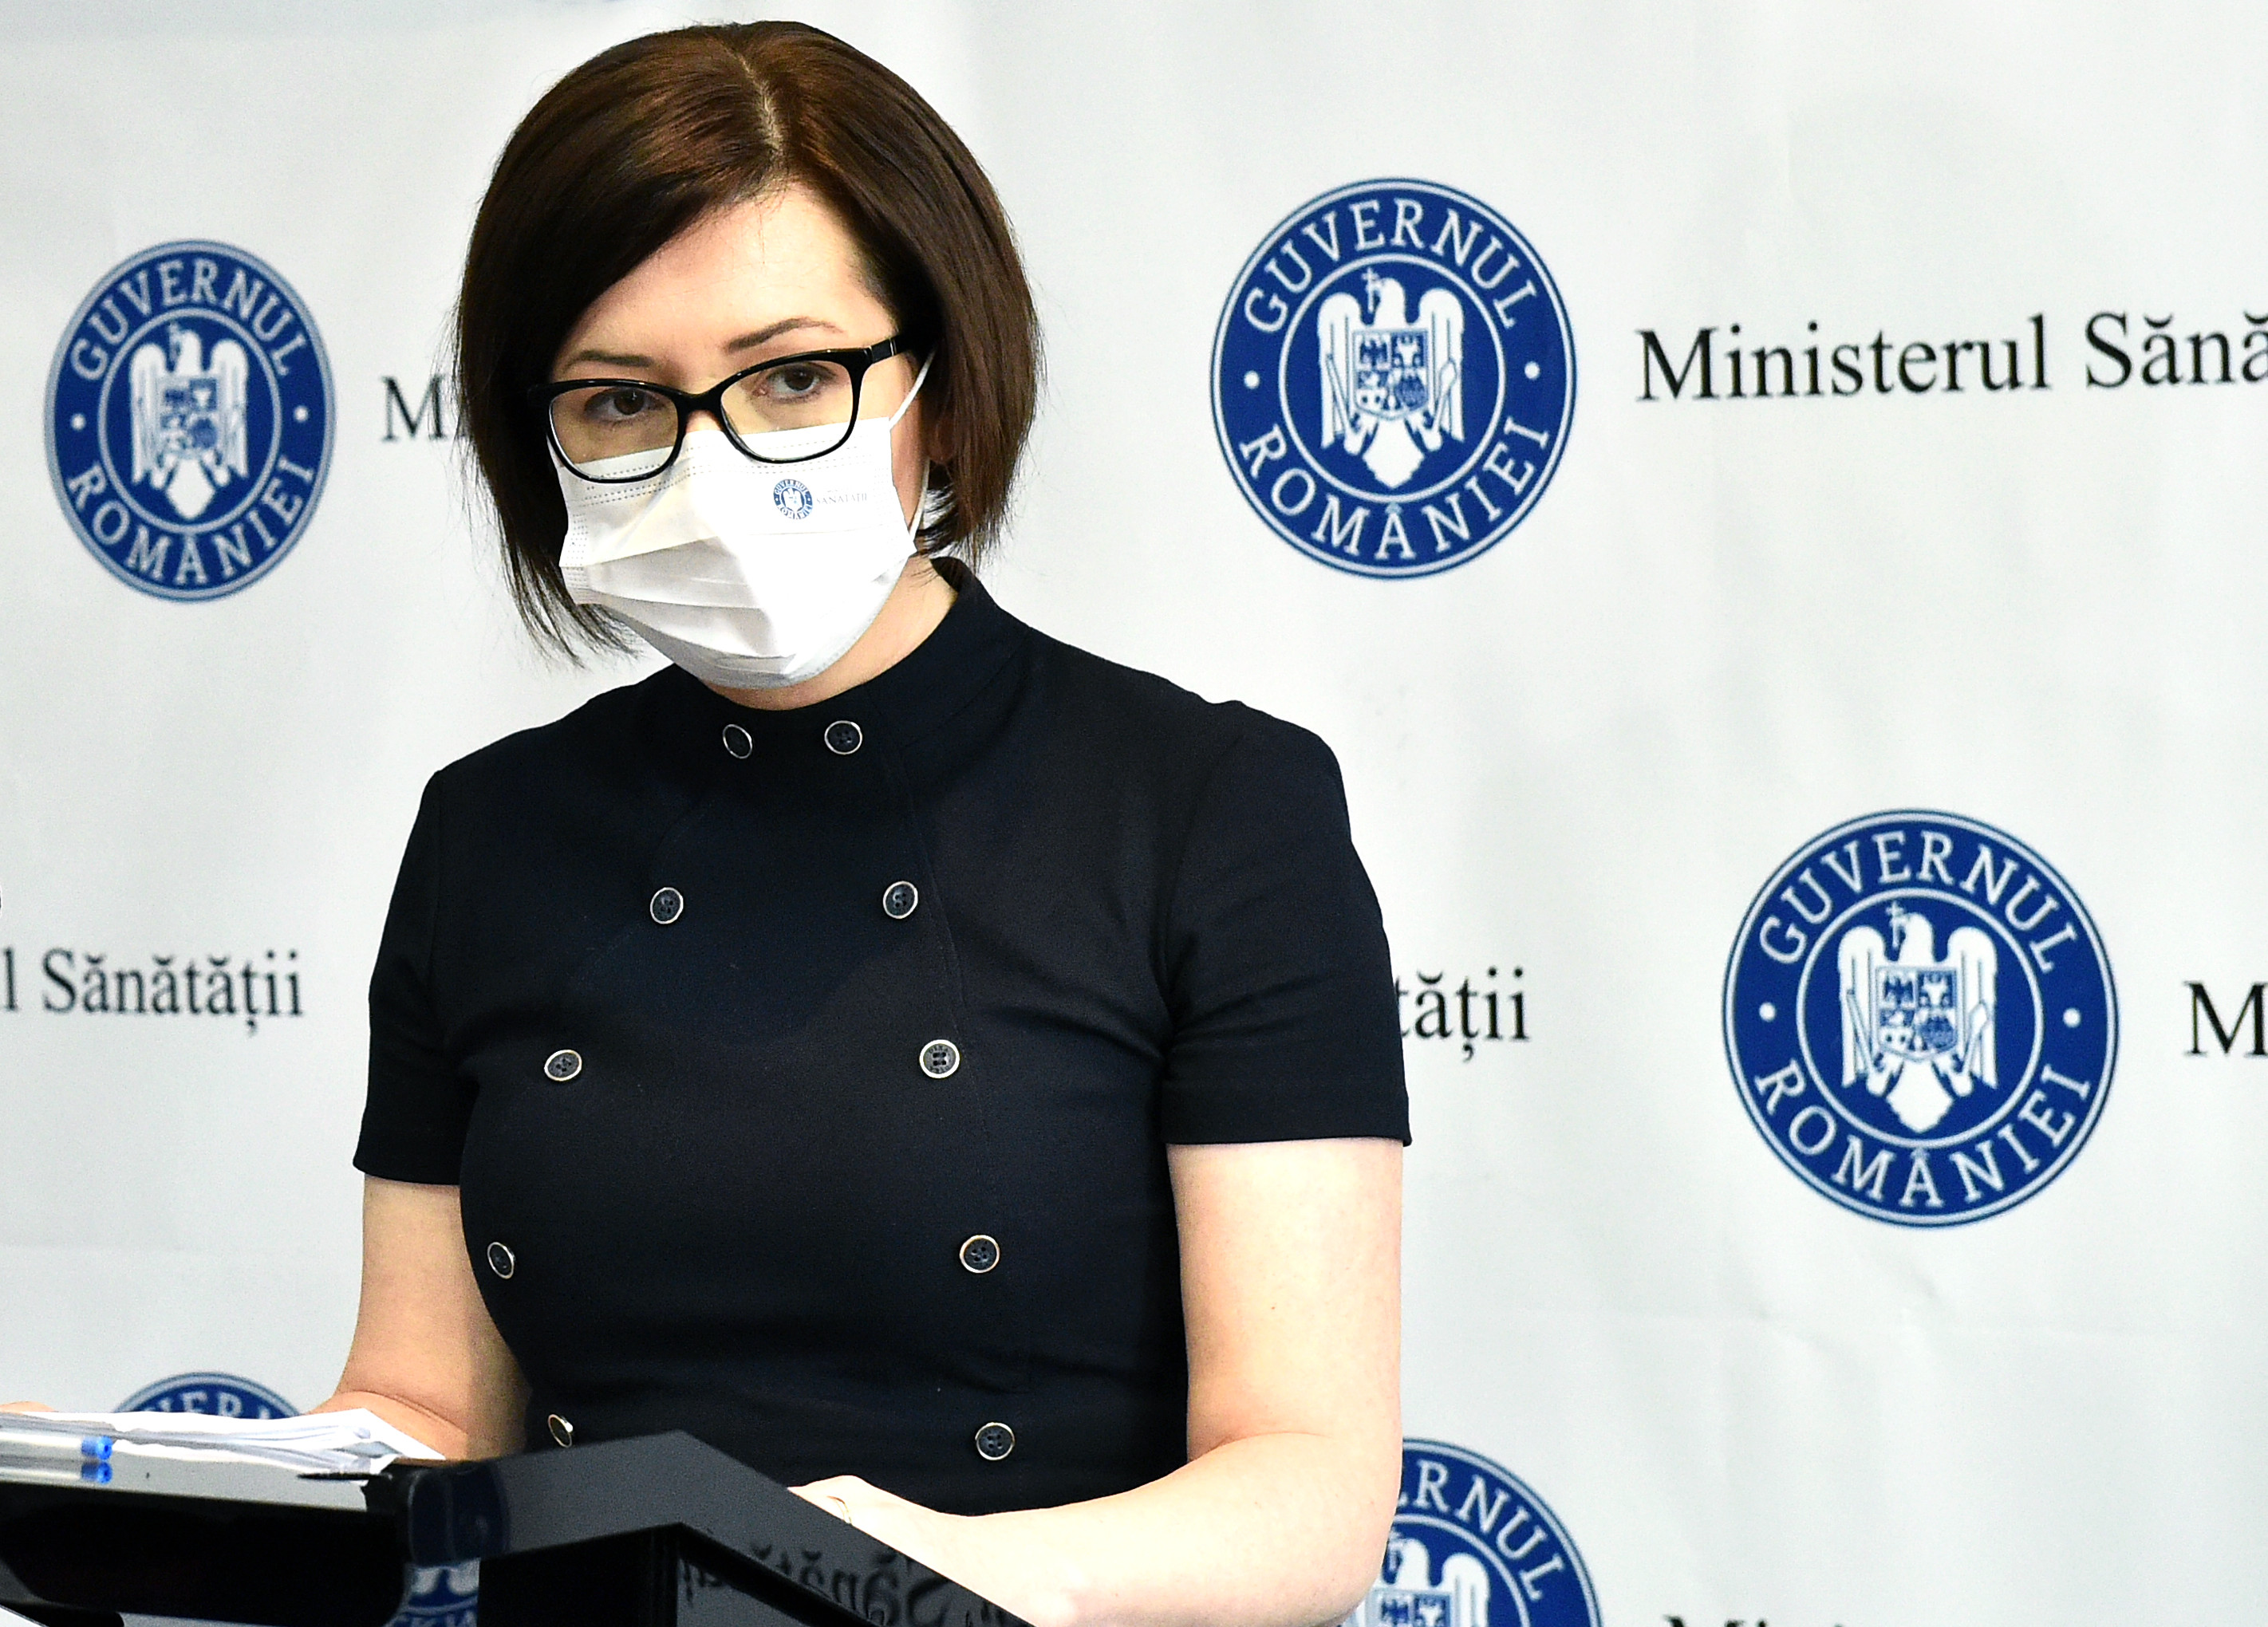 Ministrul Sănătăţii, Ioana Mihăilă: Încurajez părinţii să-şi vaccineze copiii când va fi posibil